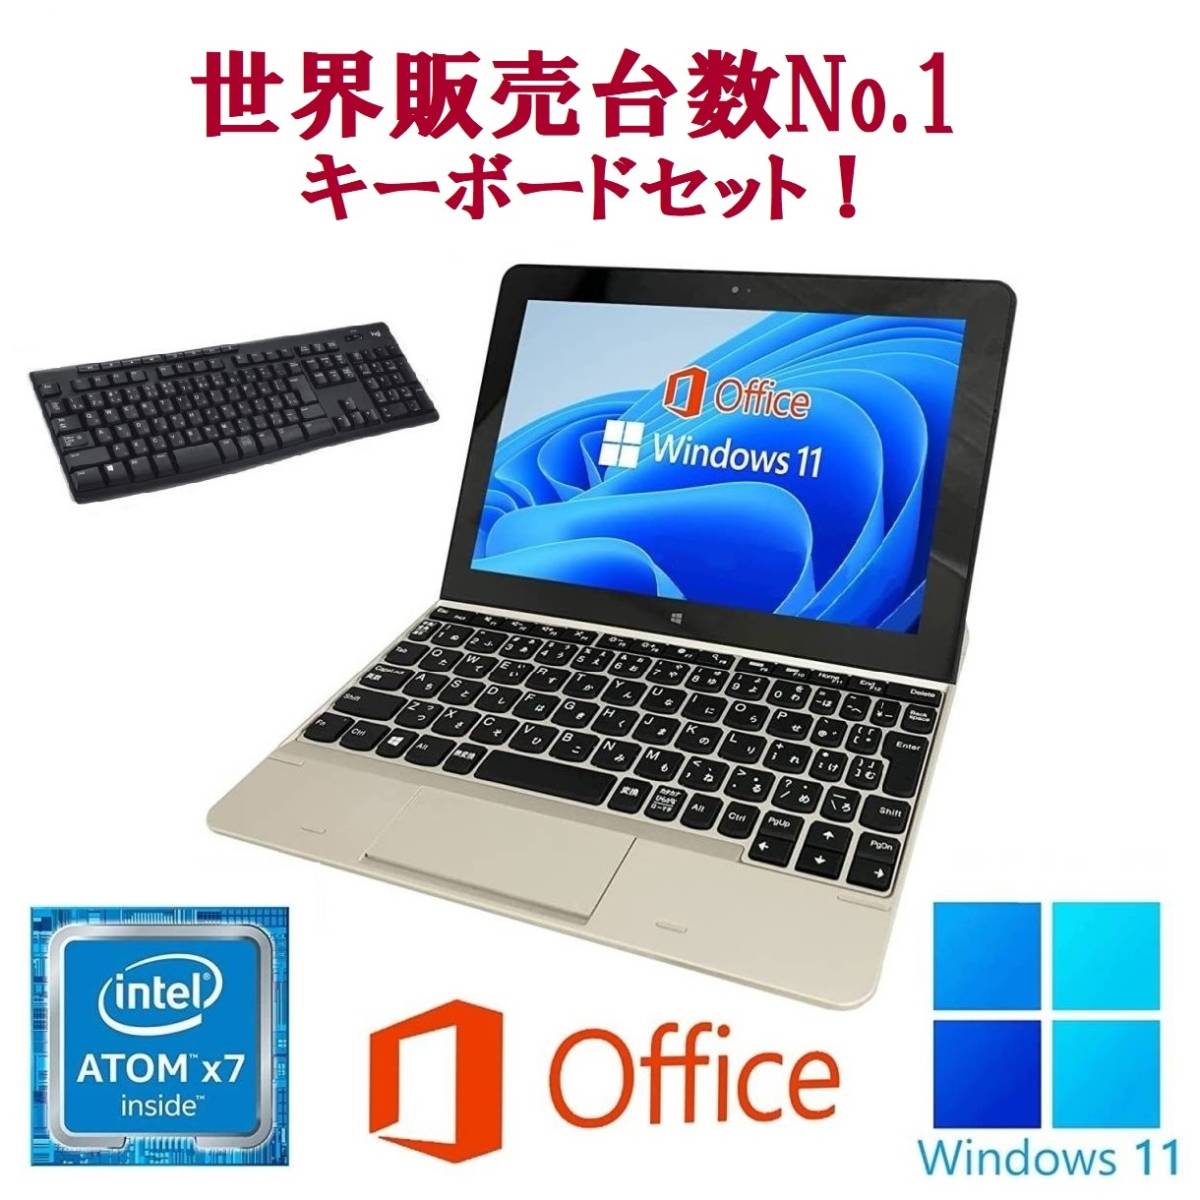 祝開店！大放出セール開催中 NECVK11 タブレット Windows11 WEBカメラ メモリー:4GB 大容量SSD:128GB Office 2019 ノートPC